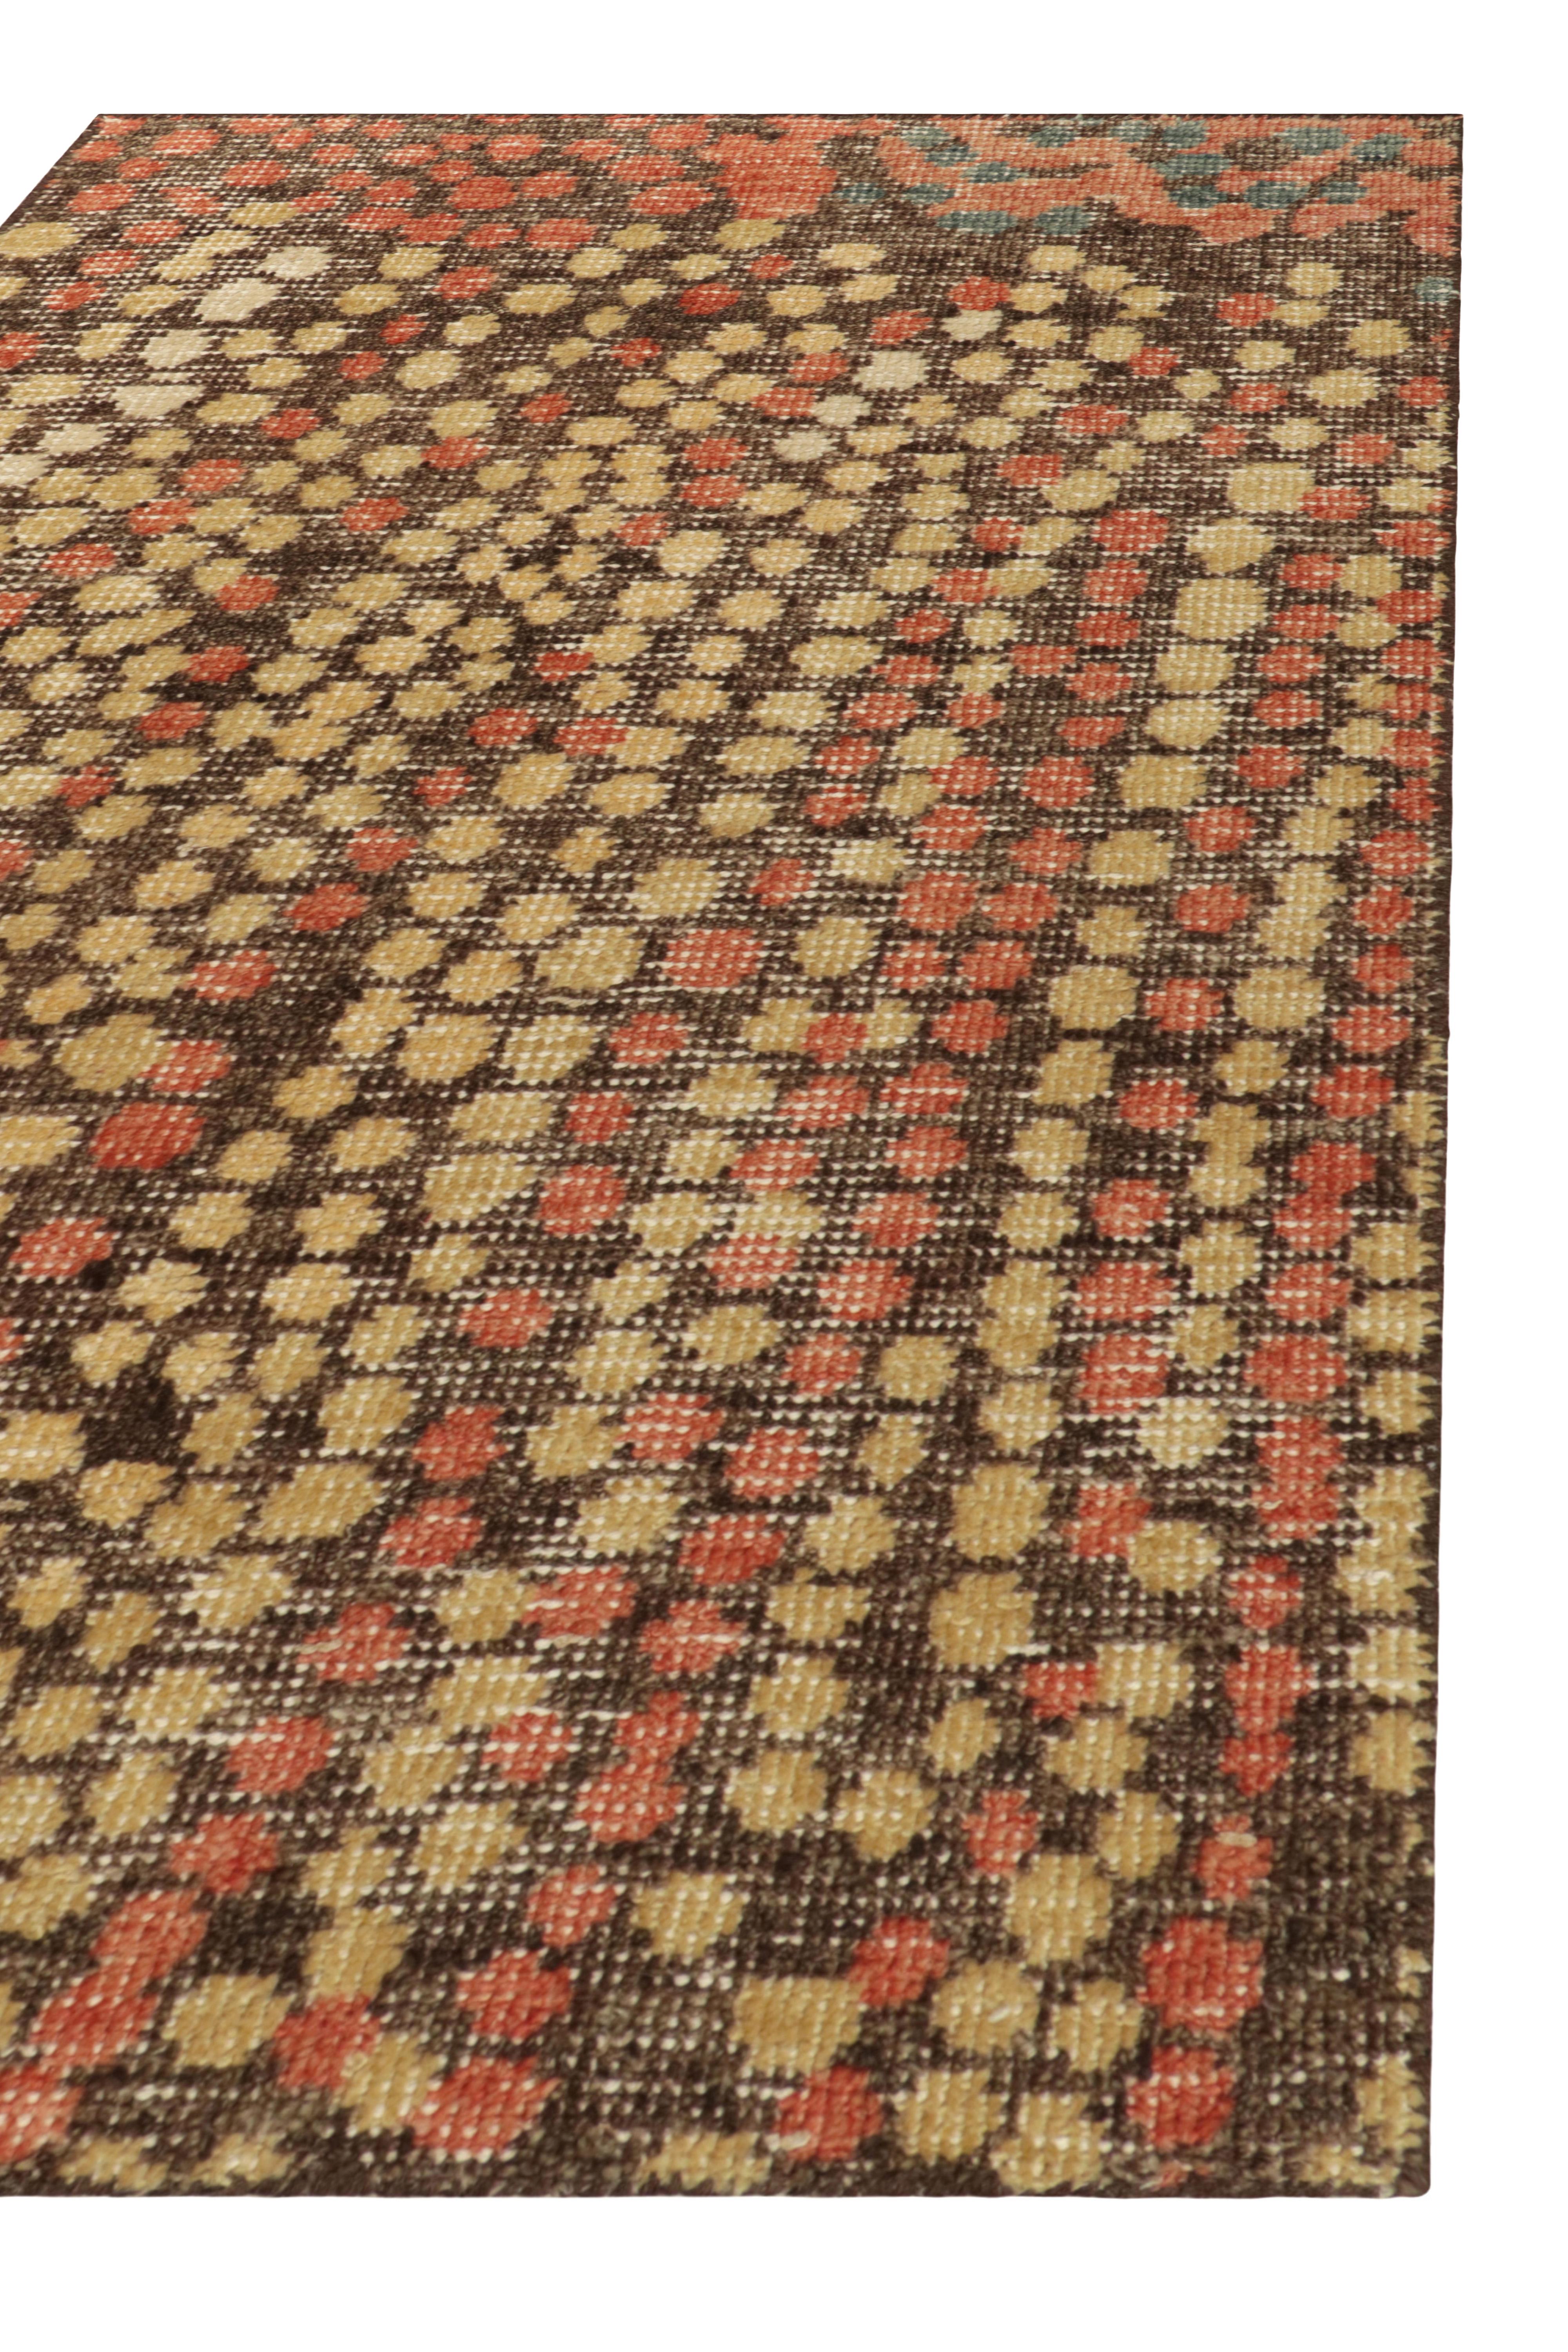 Dieser 2x3-Teppich stammt aus der Homage-Kollektion von Rug & Kilim in Geschenkgröße und zeichnet sich durch einen mutigen Distressed-Stil aus. Dieses Design ist eine Mischung aus abstrakten Ideen und Punktmustern in Orange-Rot, Blau und